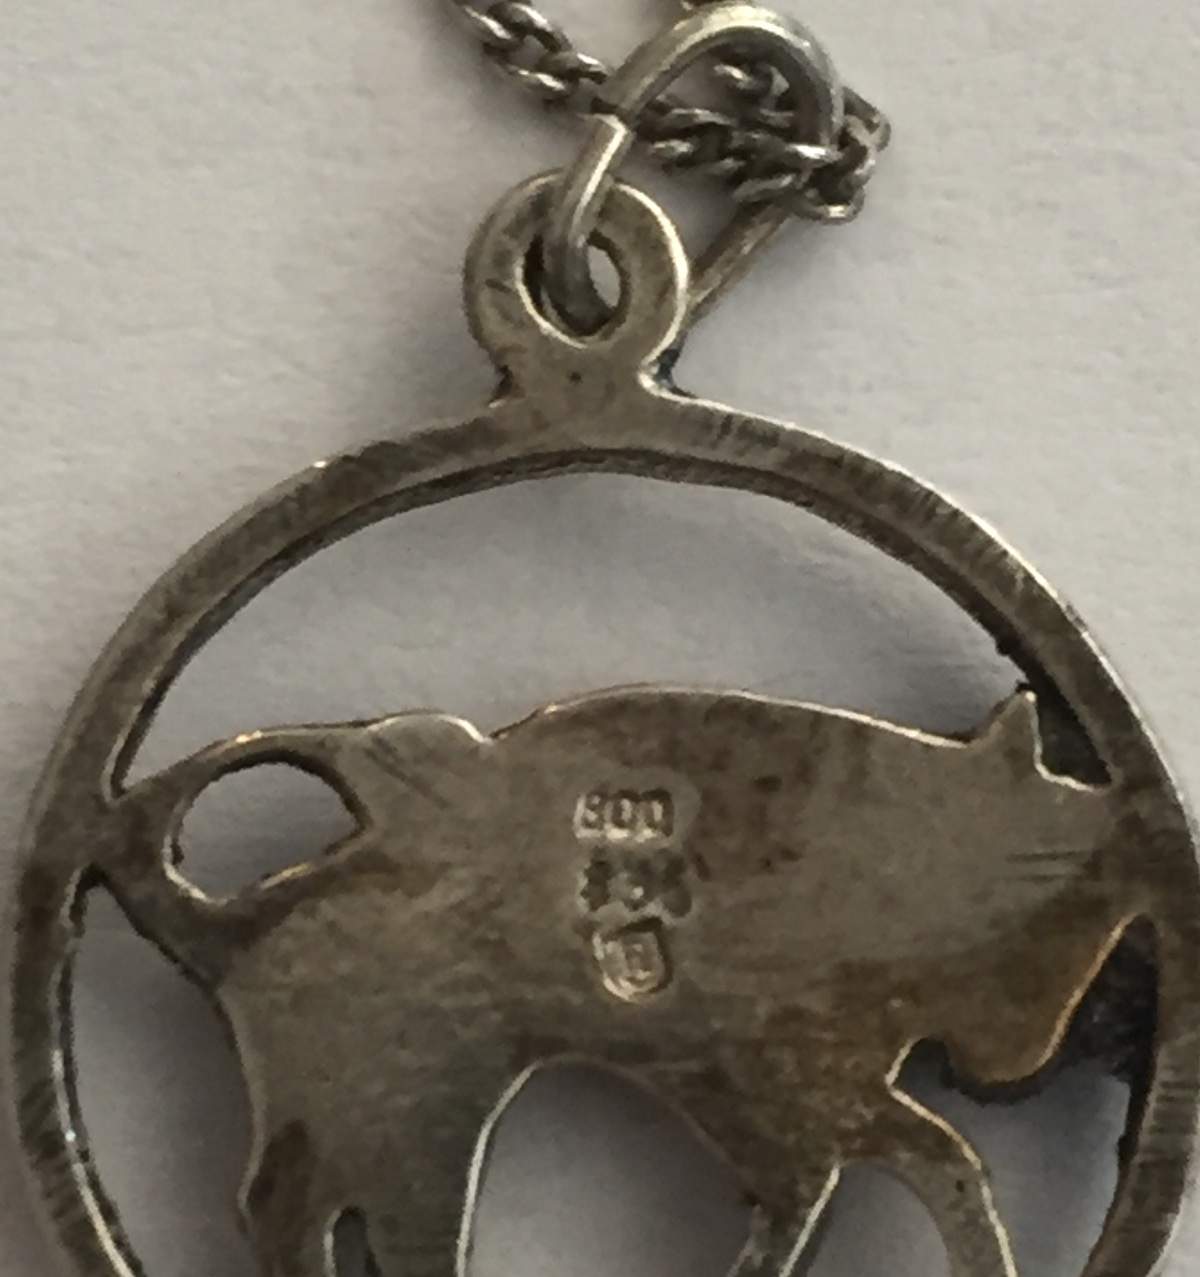 Silber (800er) Halskette mit Stier Anhänger